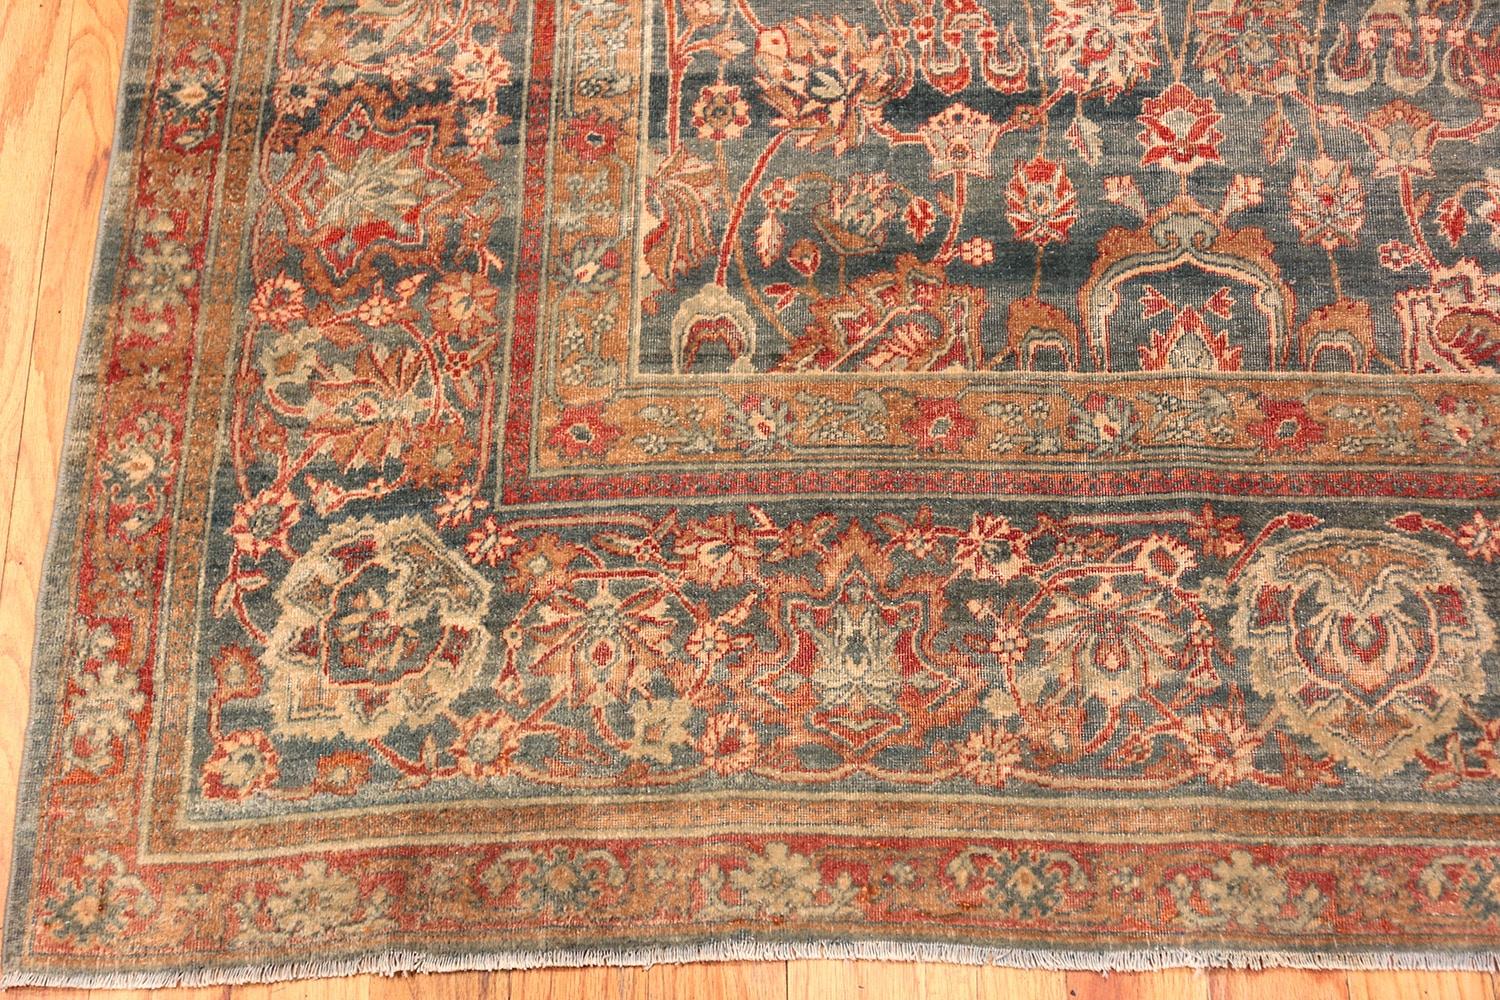 Wunderschön geschliffener blauer antiker Perserteppich aus Kerman, Herkunftsland oder Teppichart: Persische Teppiche, um 1900. Größe: 9 ft 11 in x 11 ft 8 in (3,02 m x 3,56 m)

